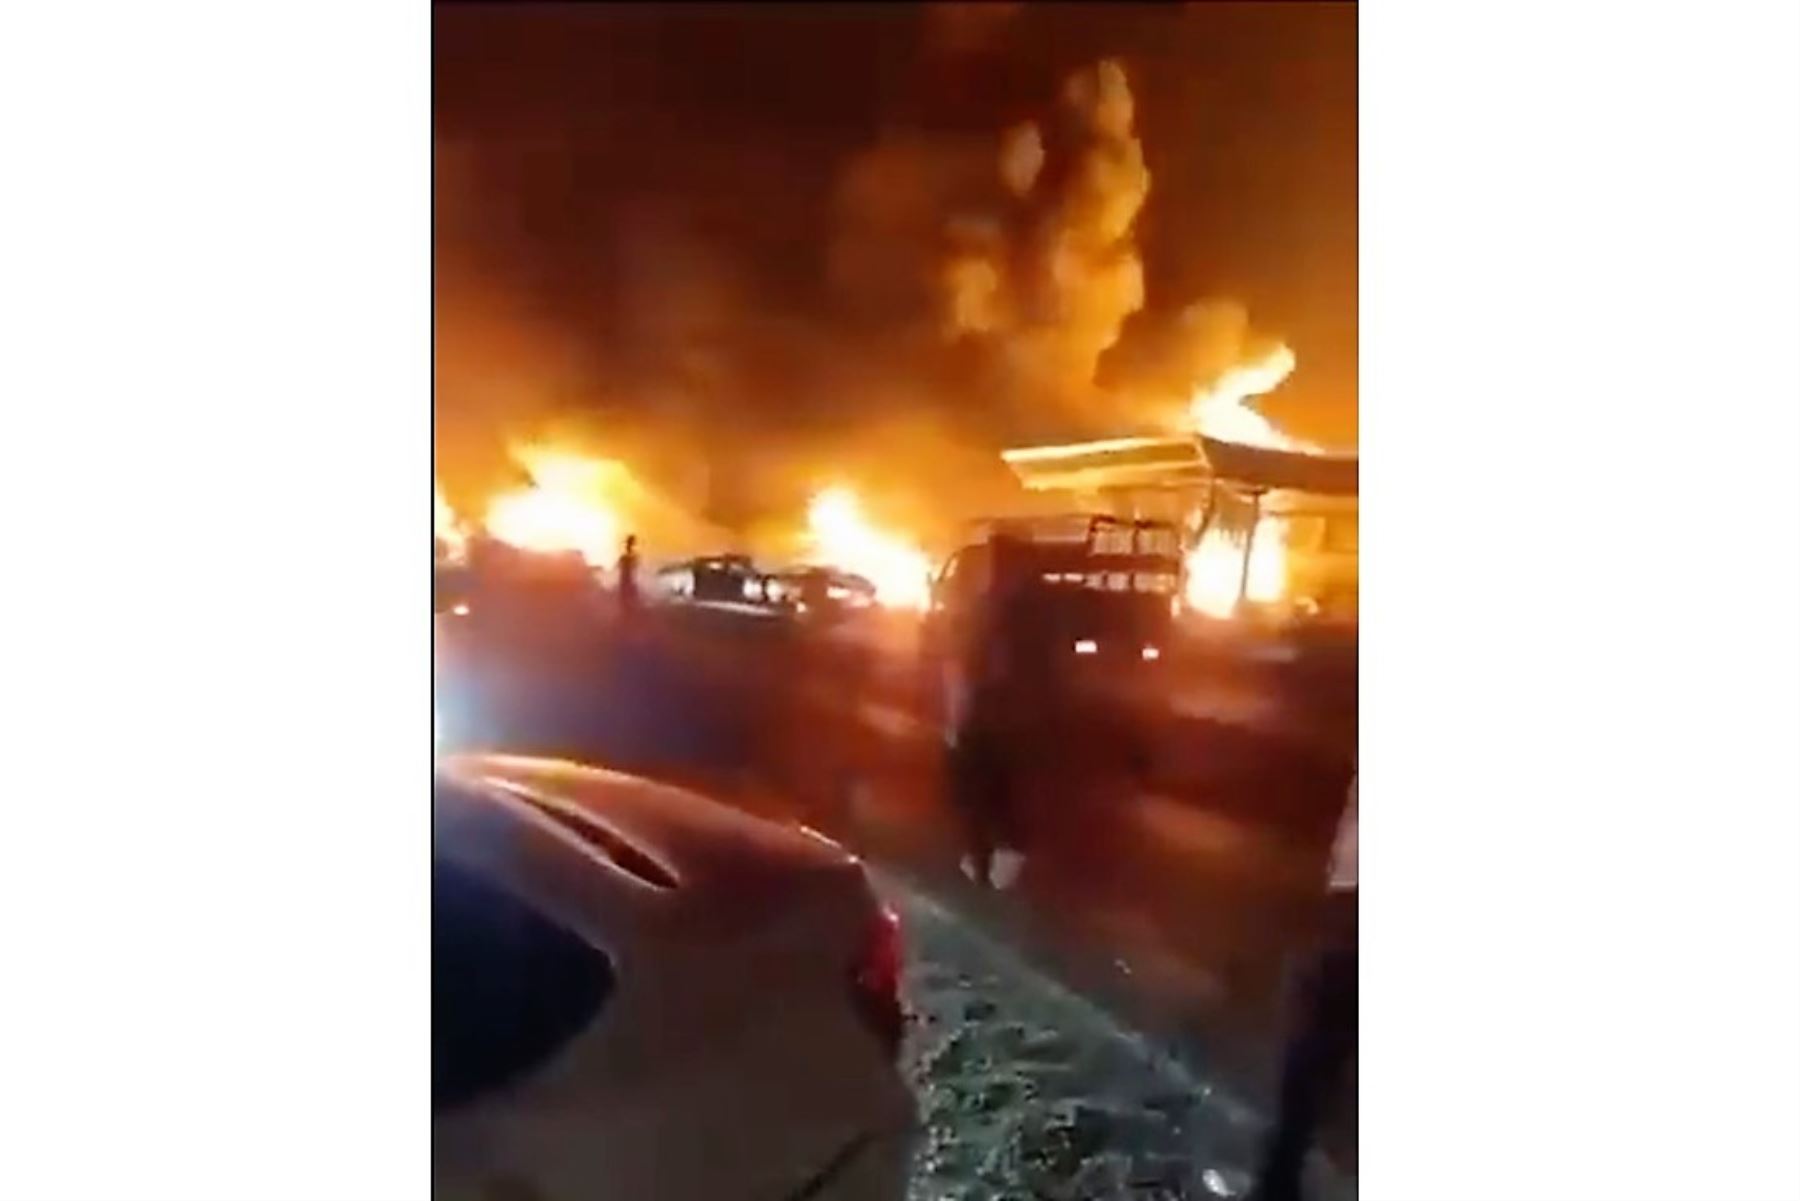 Captura de pantalla de un video aficionado grabado en la zona donde explosionó una gasolinera, en Daguestán. Imagen: Internet/Medios.